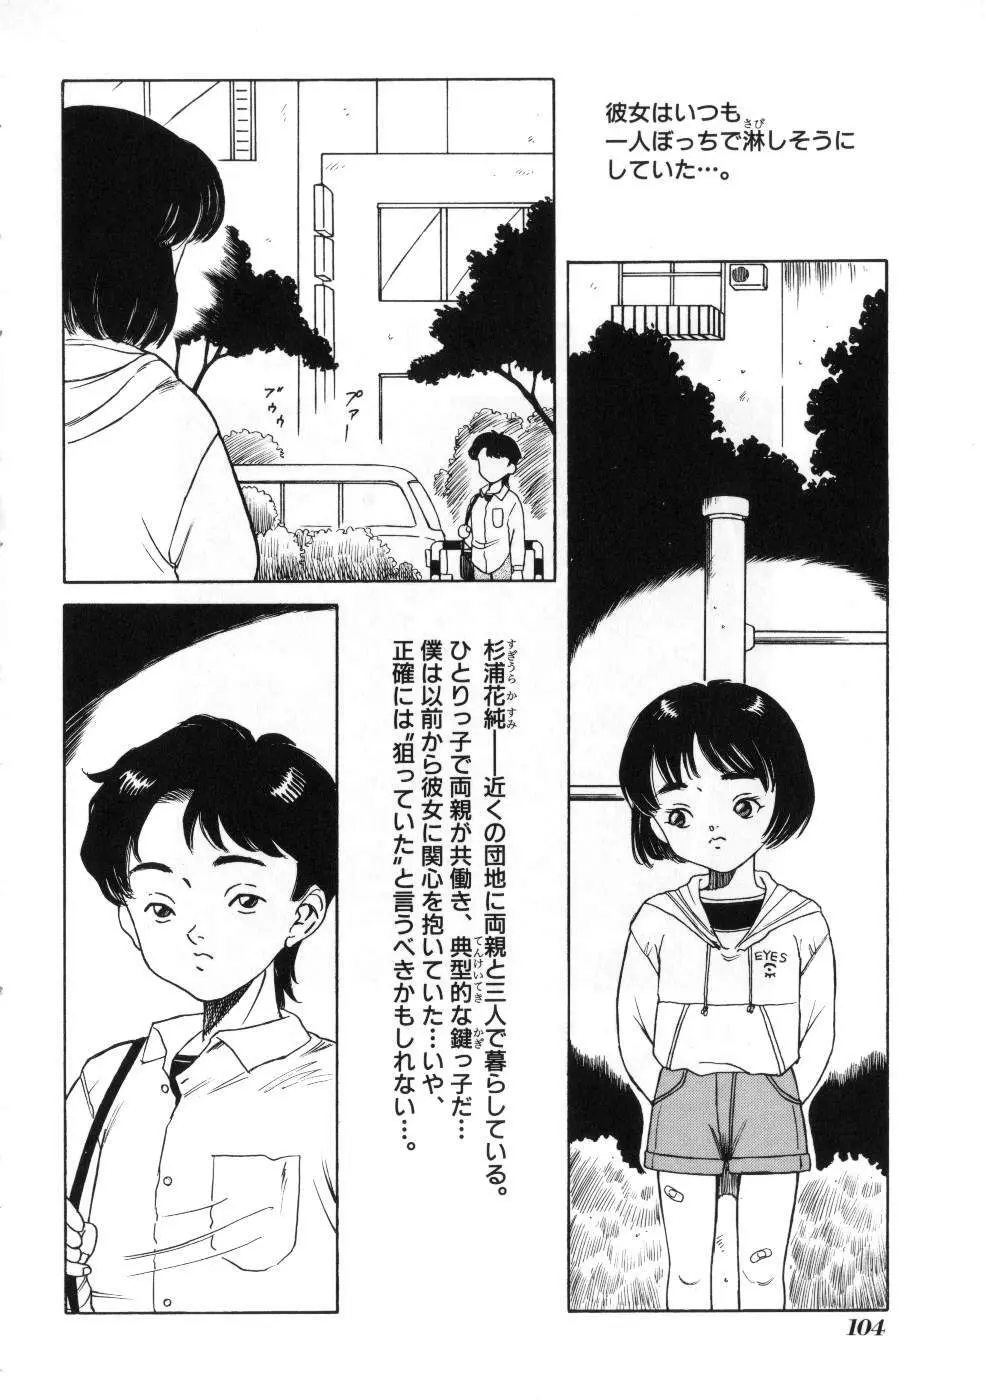 Miss ちゃいどる vol. 1 104ページ